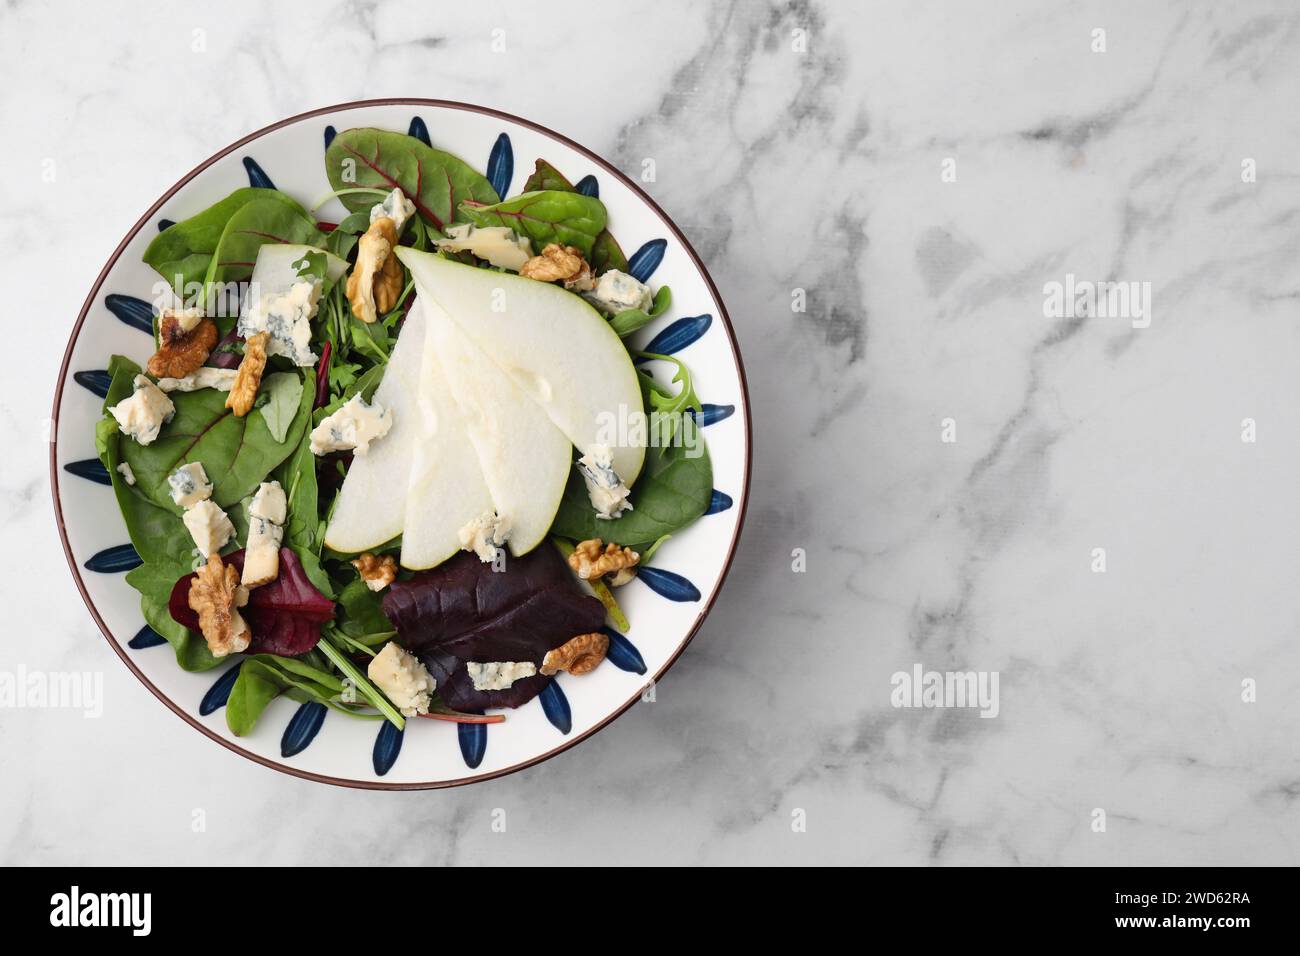 Délicieuse salade de poires dans un bol sur une table en marbre blanc, vue de dessus. Espace pour le texte Banque D'Images